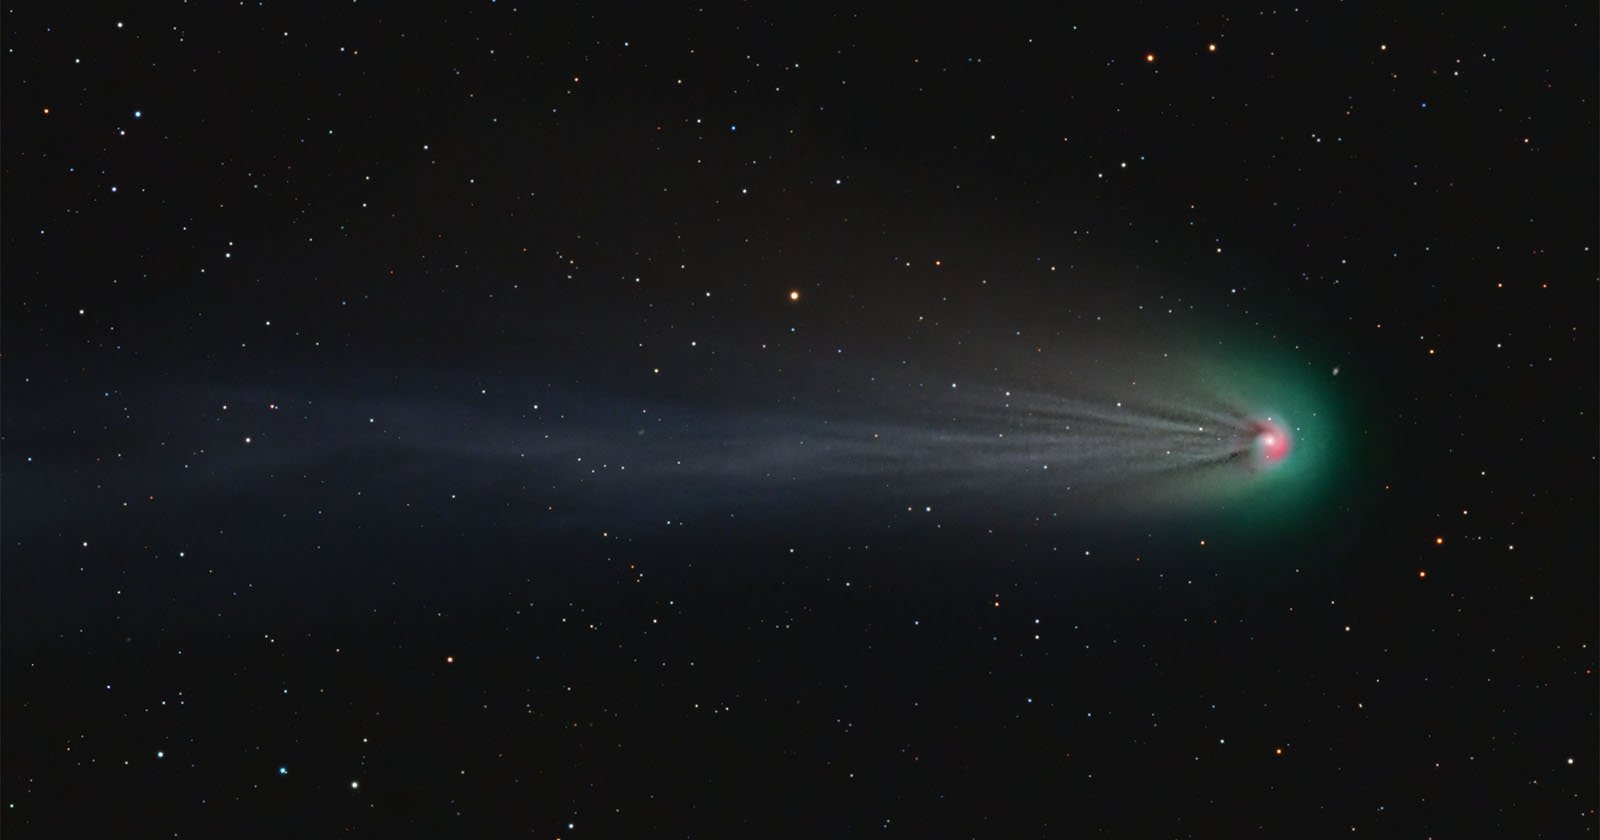  astrophotographer reveals amazing spirals around green devil comet 